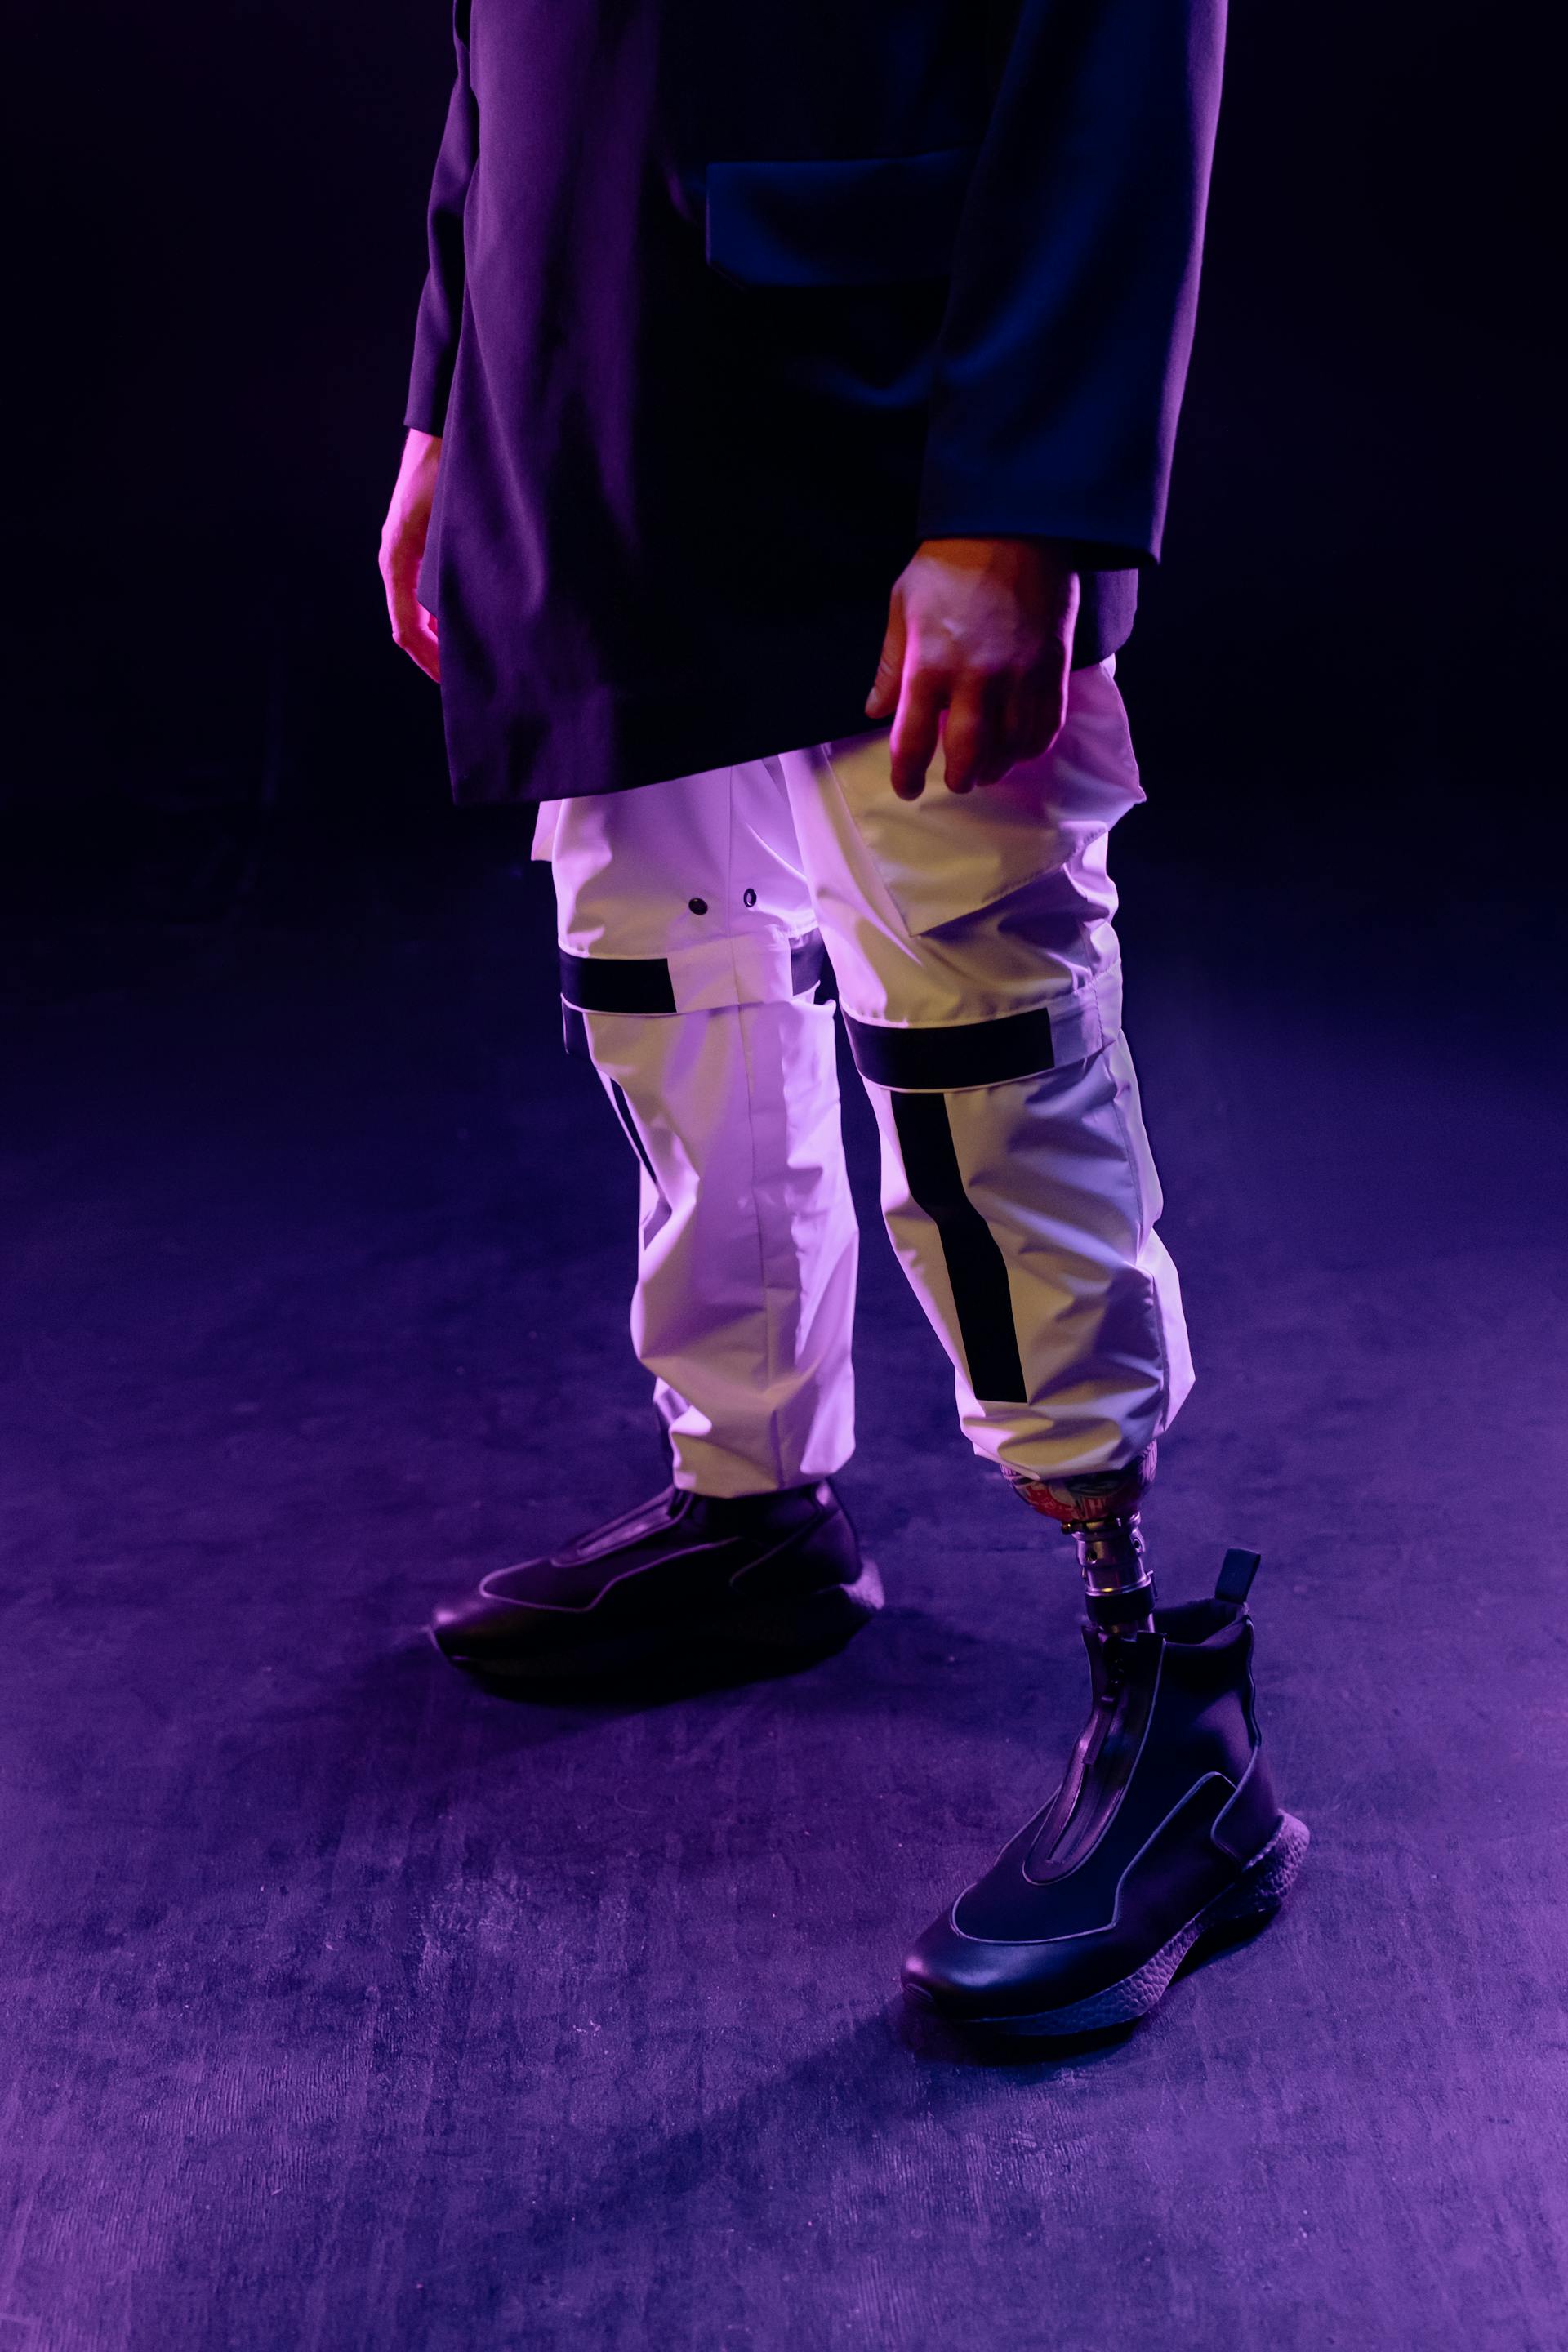 Un homme avec une prothèse de jambe en pantalon blanc et chaussures noires | Source : Pexels